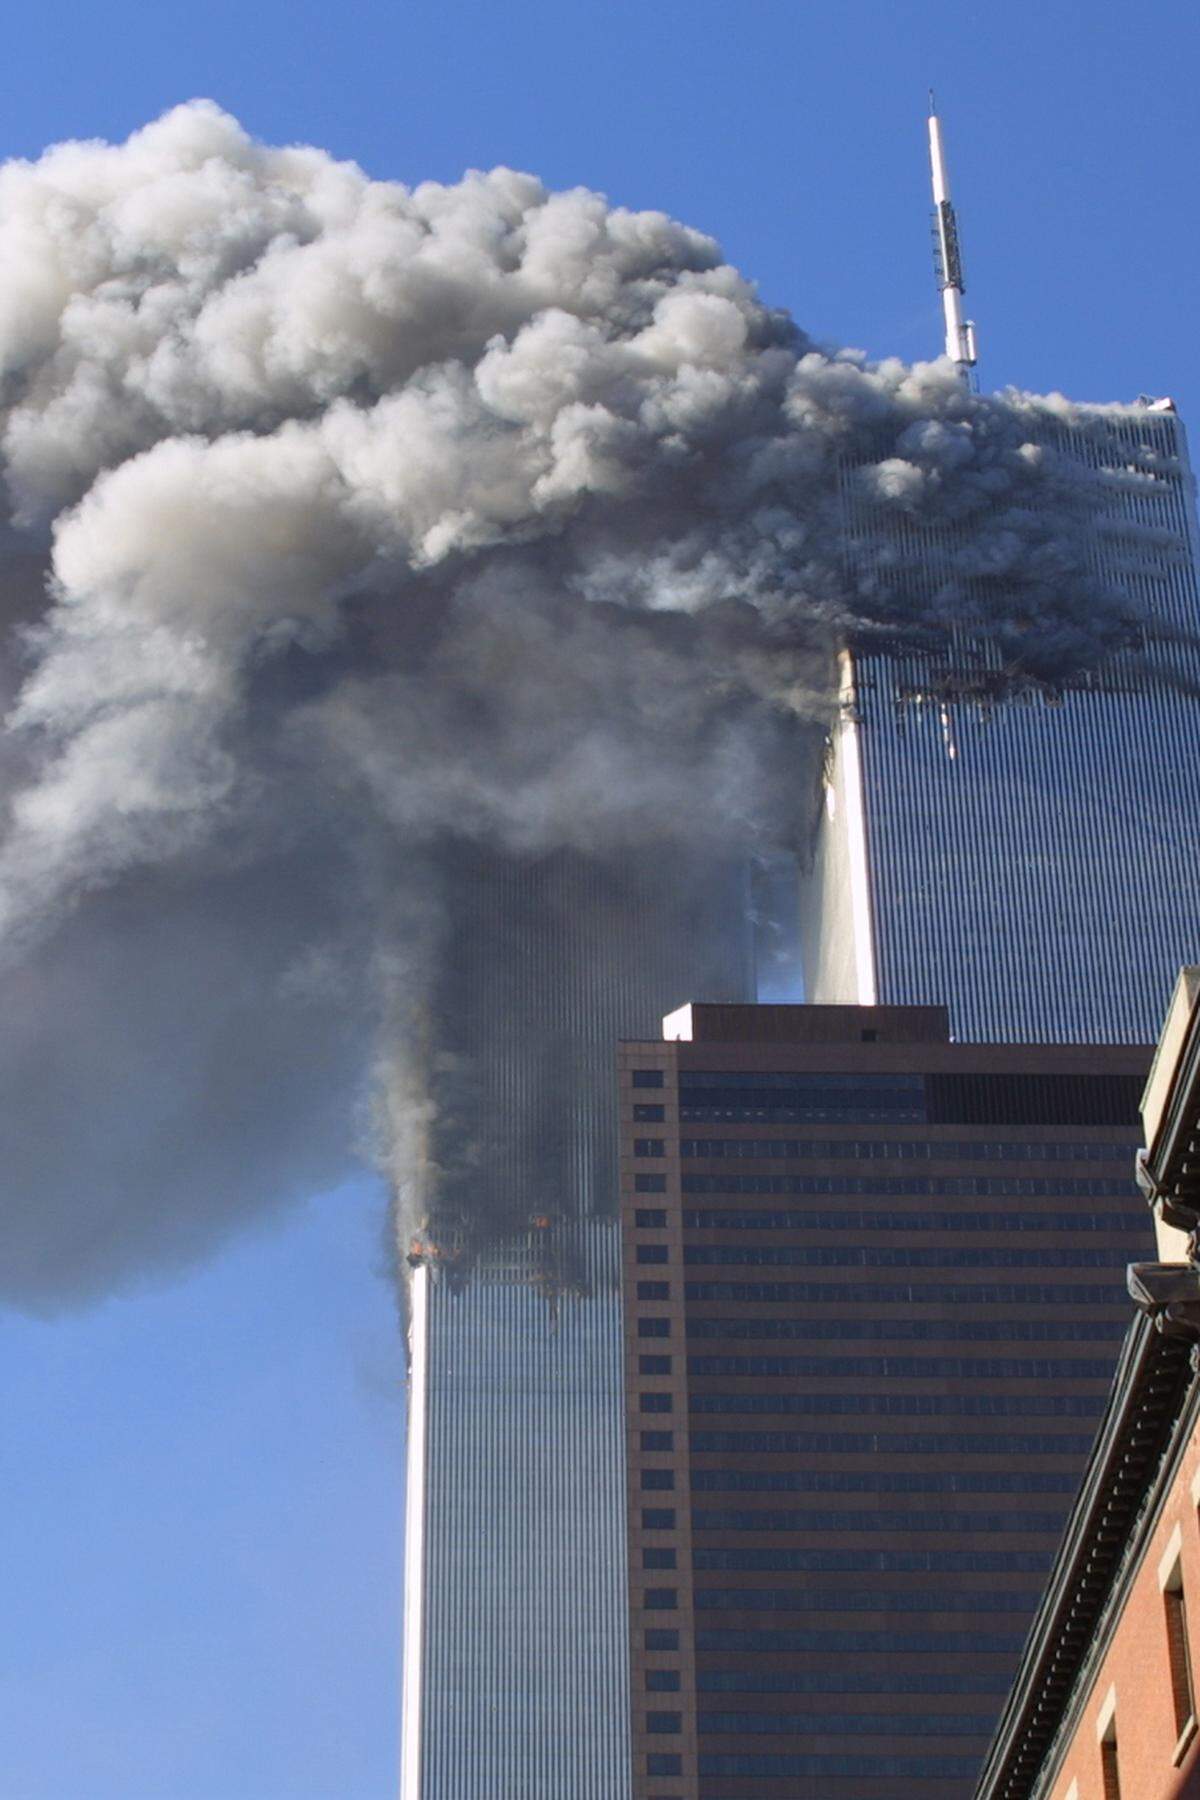 Am 11. September 2001 schließlich starben bei den Terroranschlägen in den USA fast 3000 Menschen. In einem am 9. September 2002 vom katarischen Sender Al Jazeera ausgestrahlten Interview bekannte sich Bin Laden zu den Attentaten.